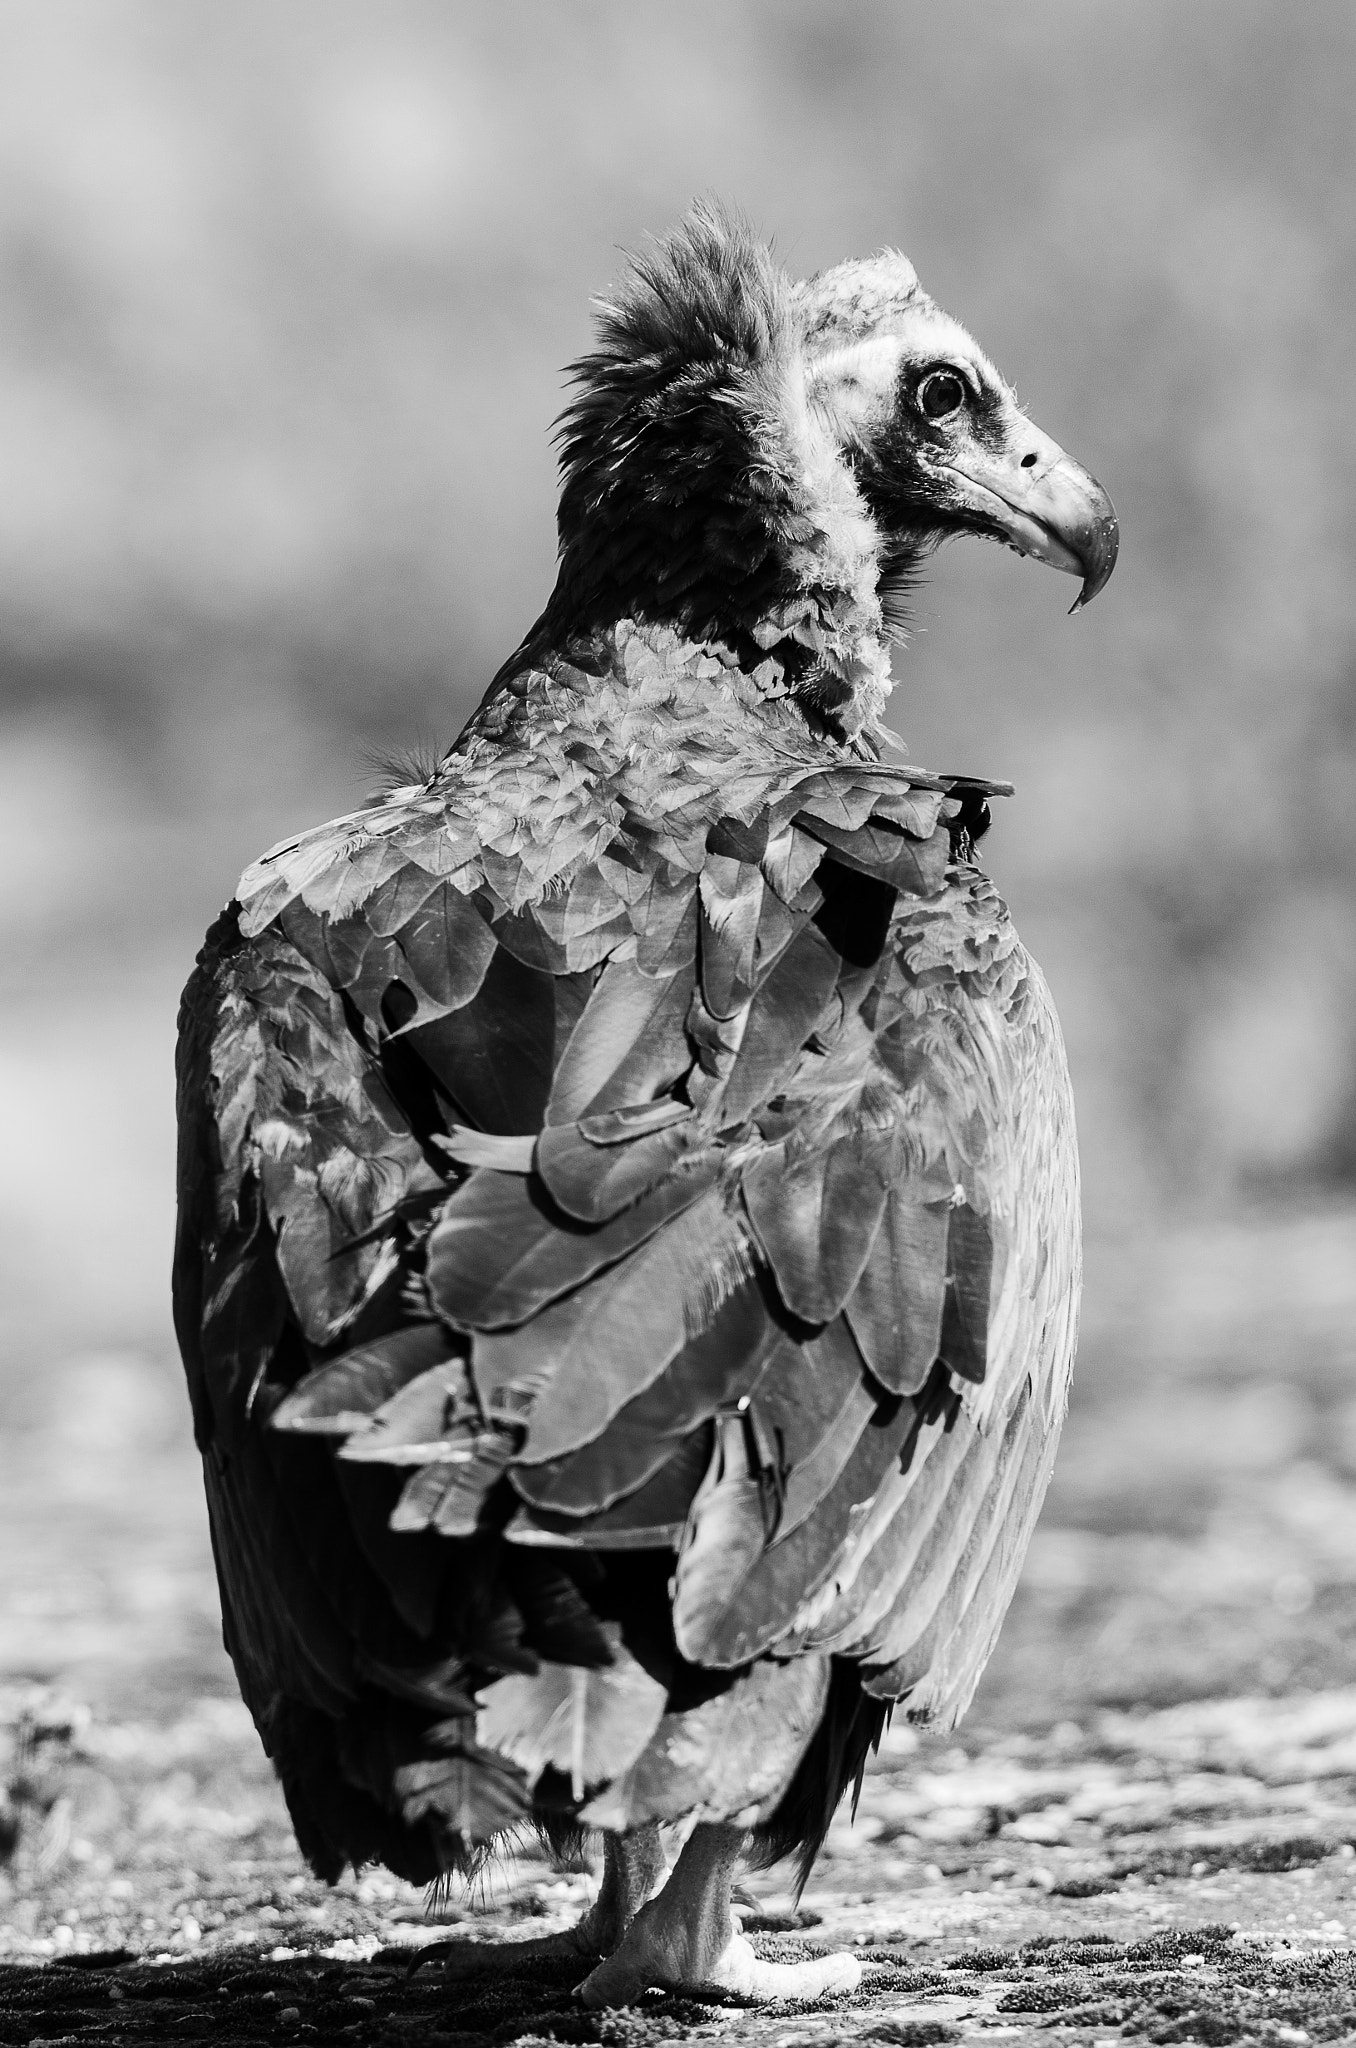 Sigma 300mm F2.8 APO EX DG HSM sample photo. Portrait de vautour photography